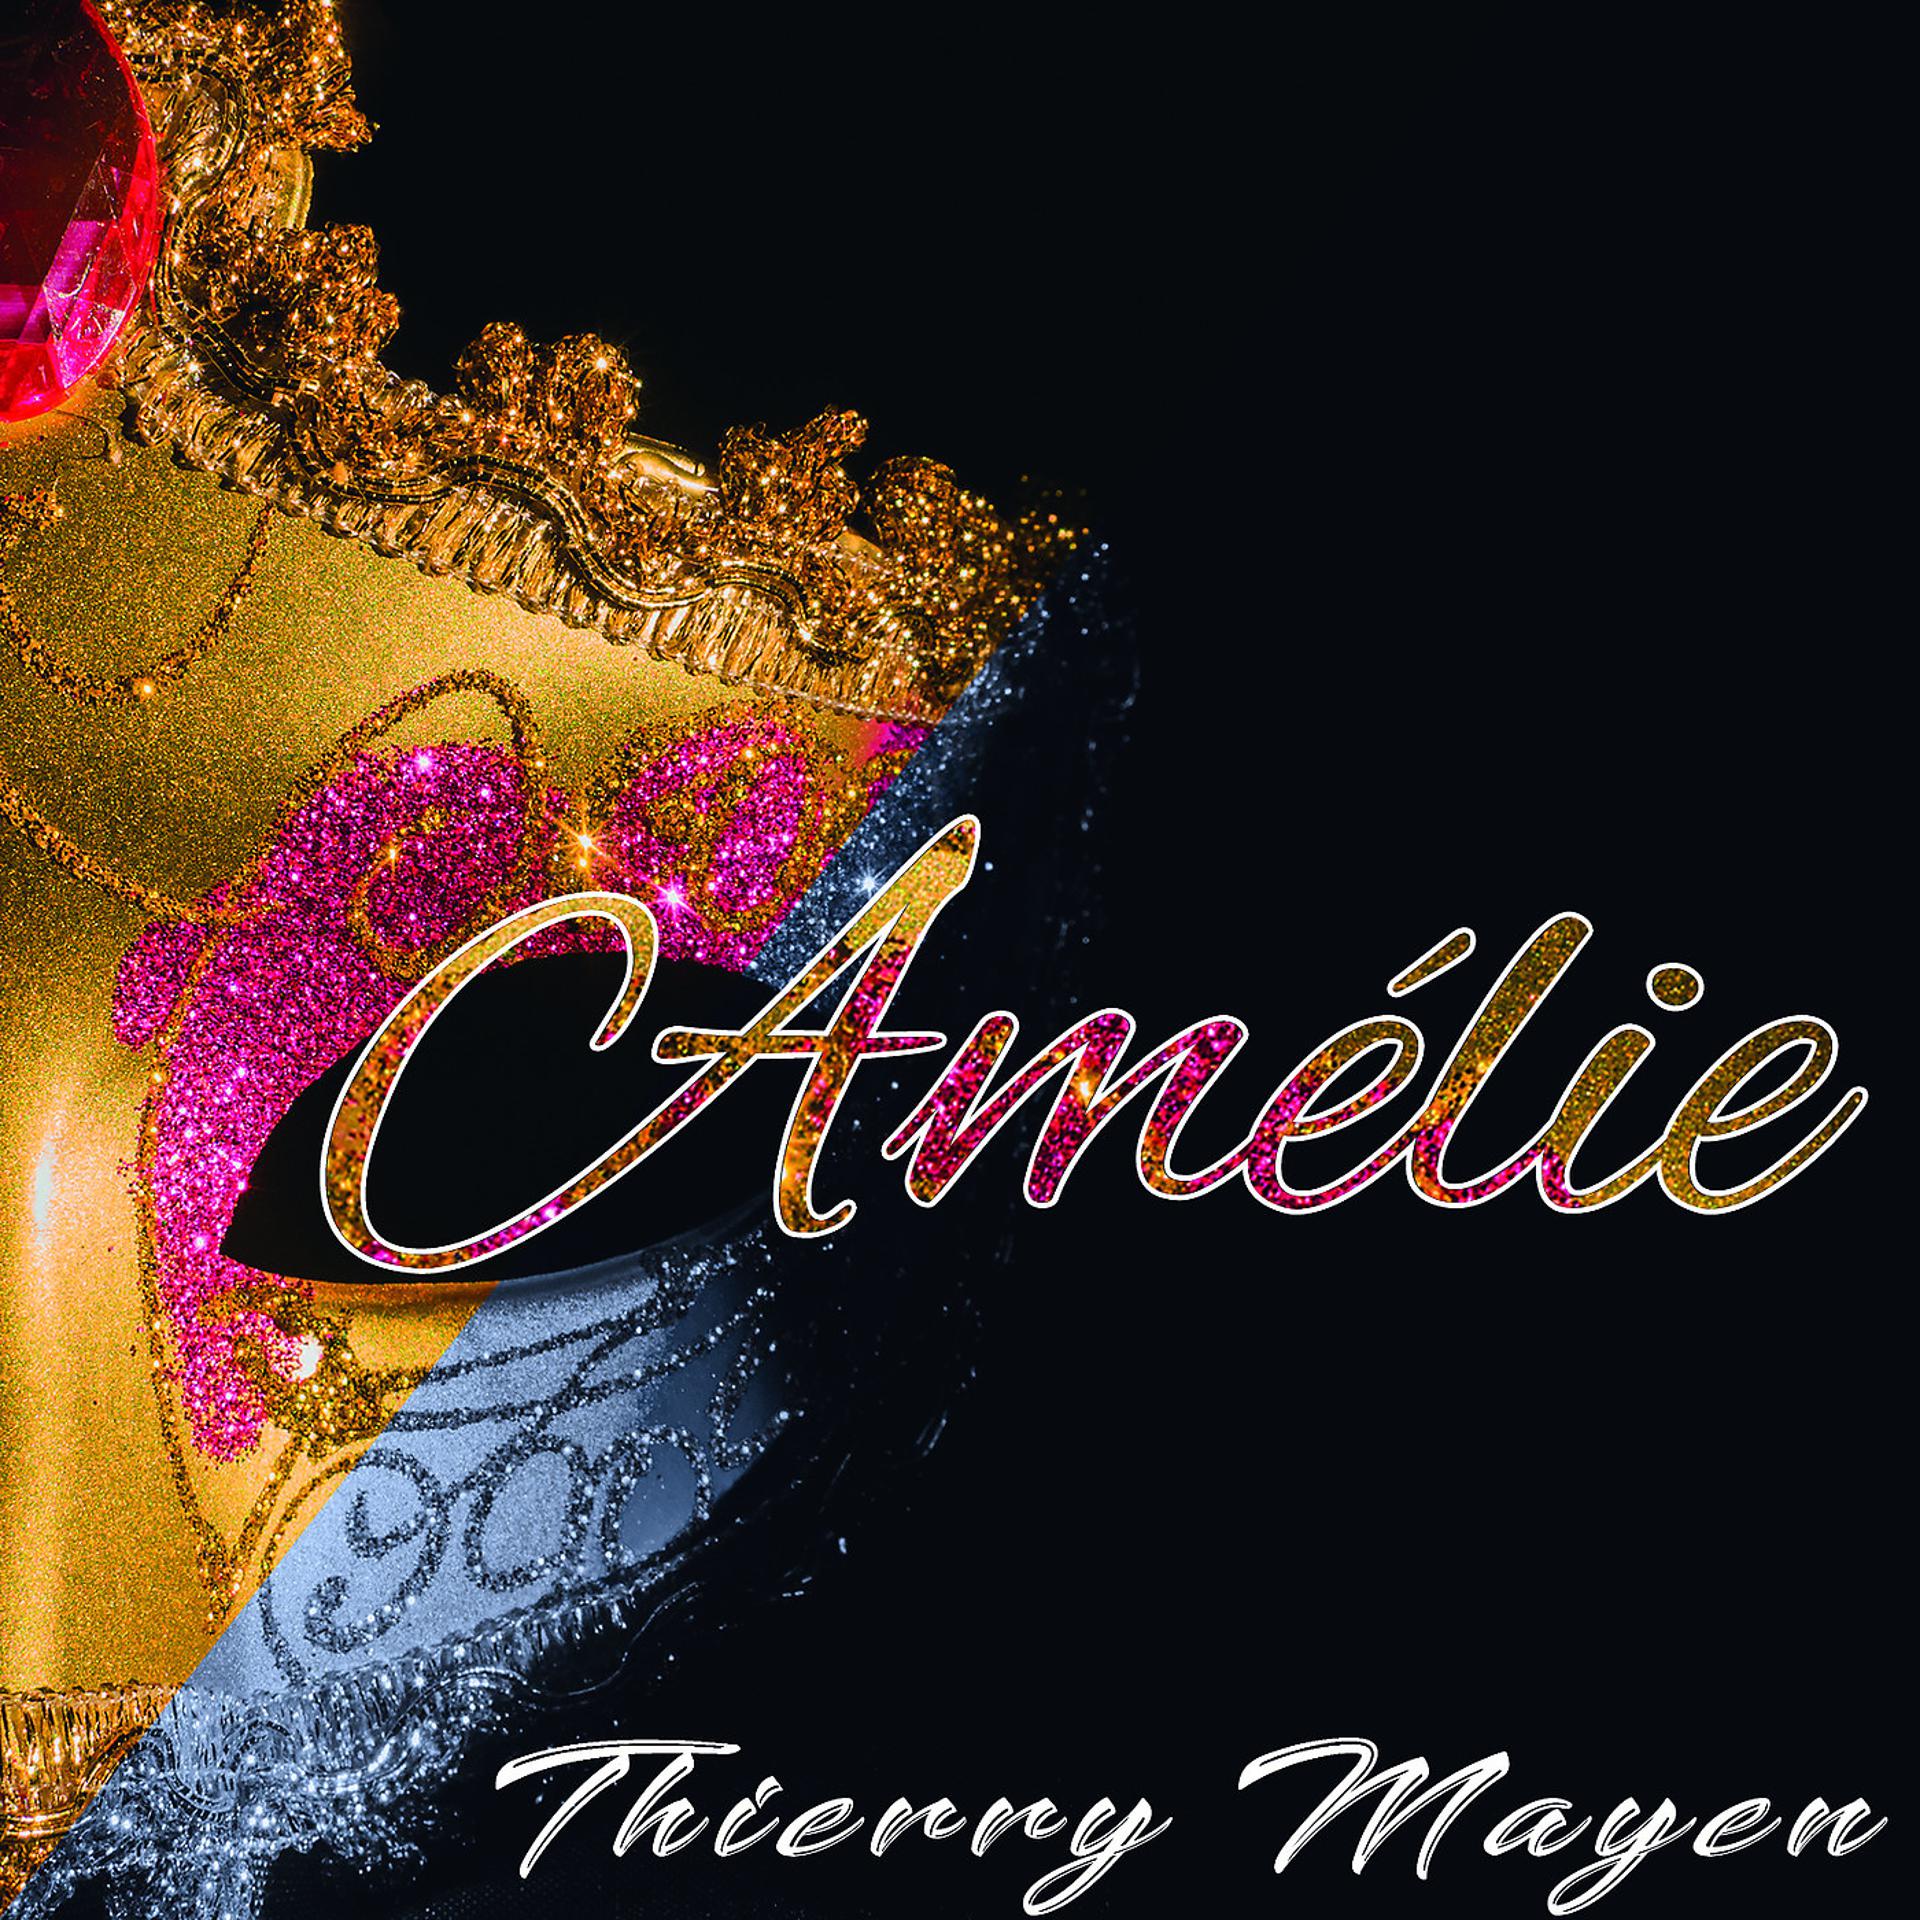 Постер альбома Amelie